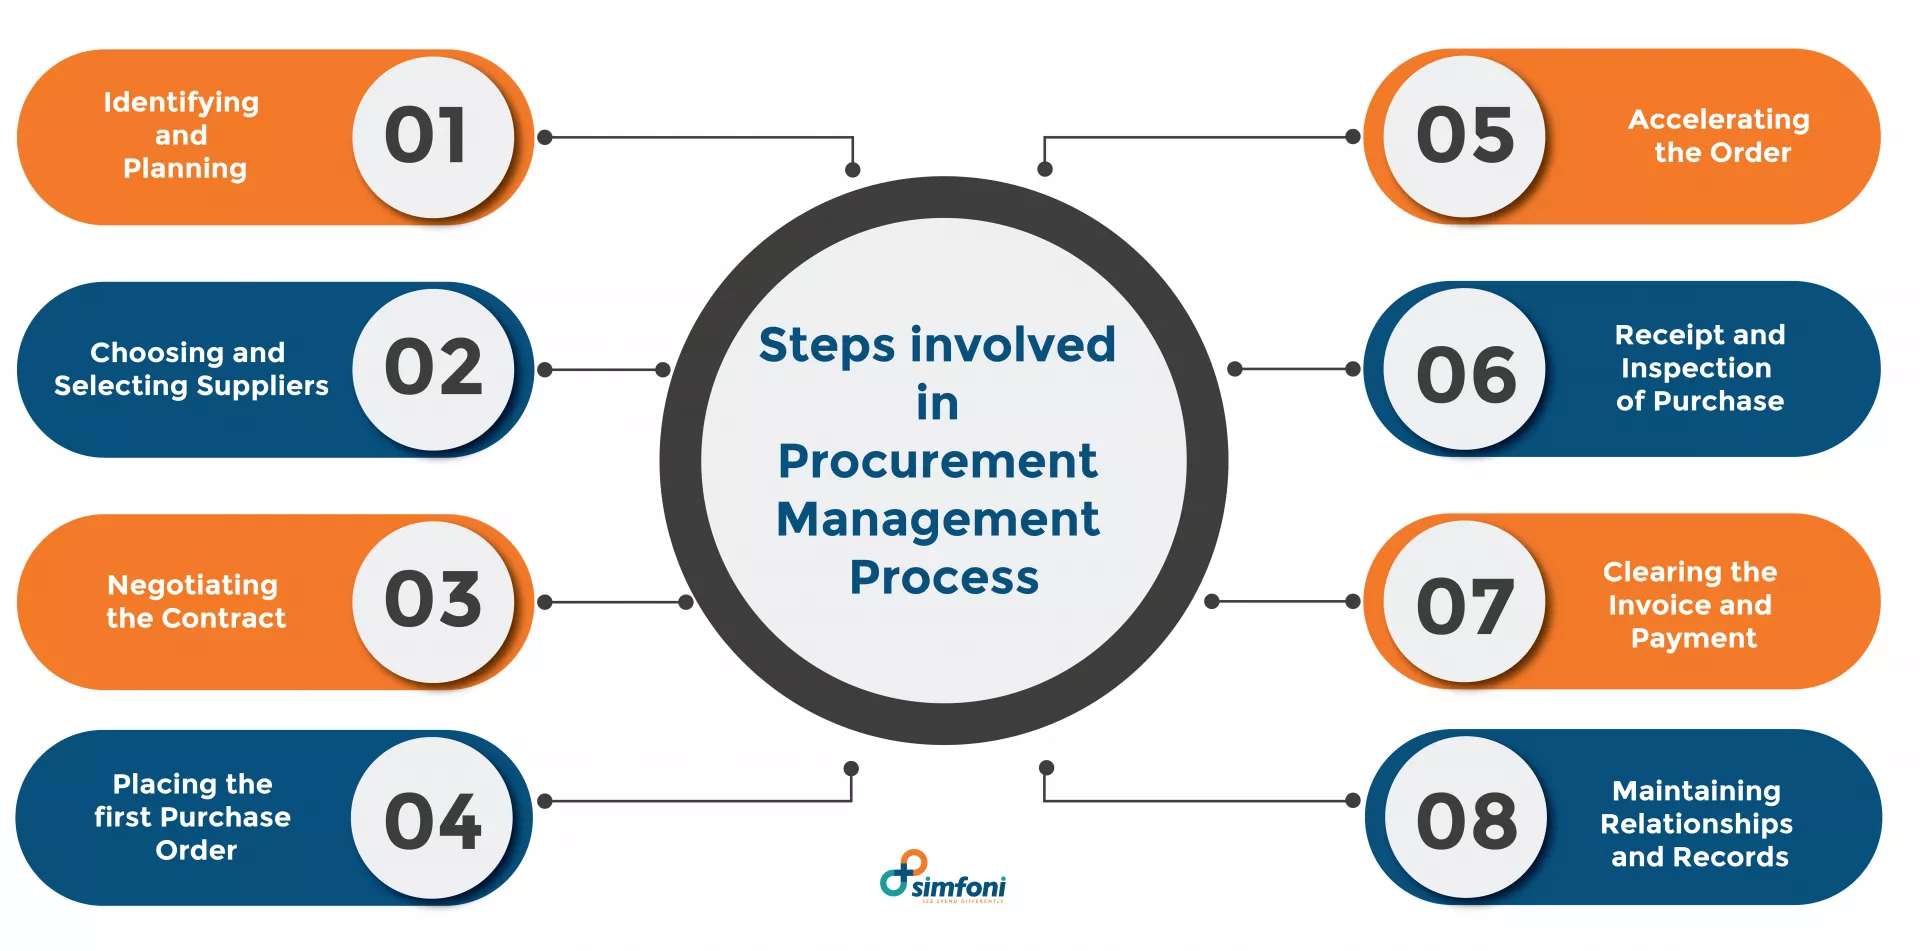 Procurement Management Process